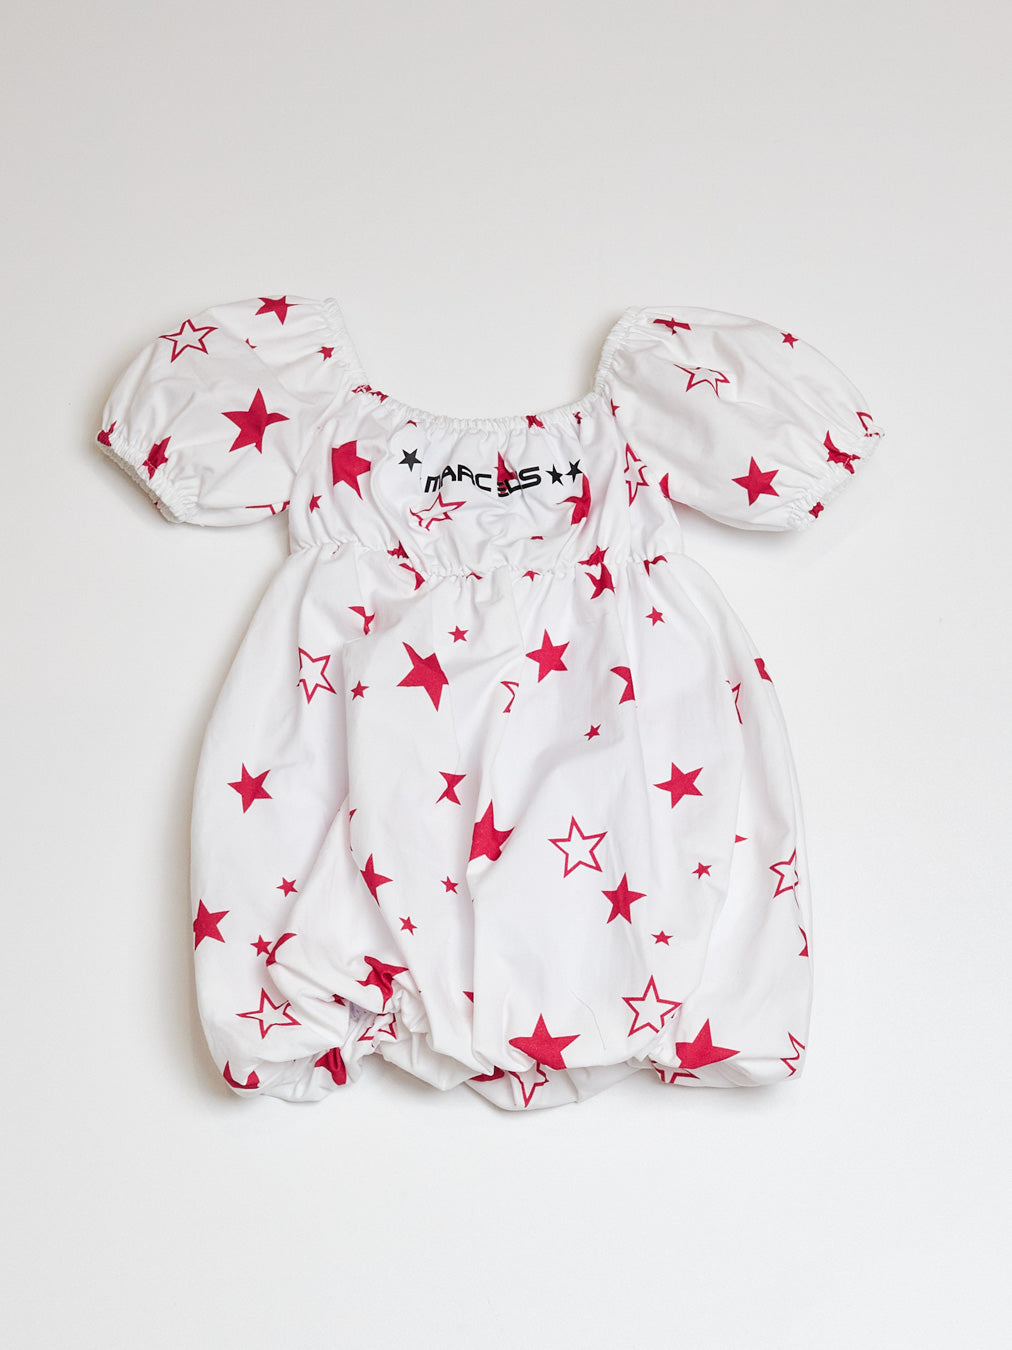 Marc Ellis abito bianco con stampe a contrasto neonati